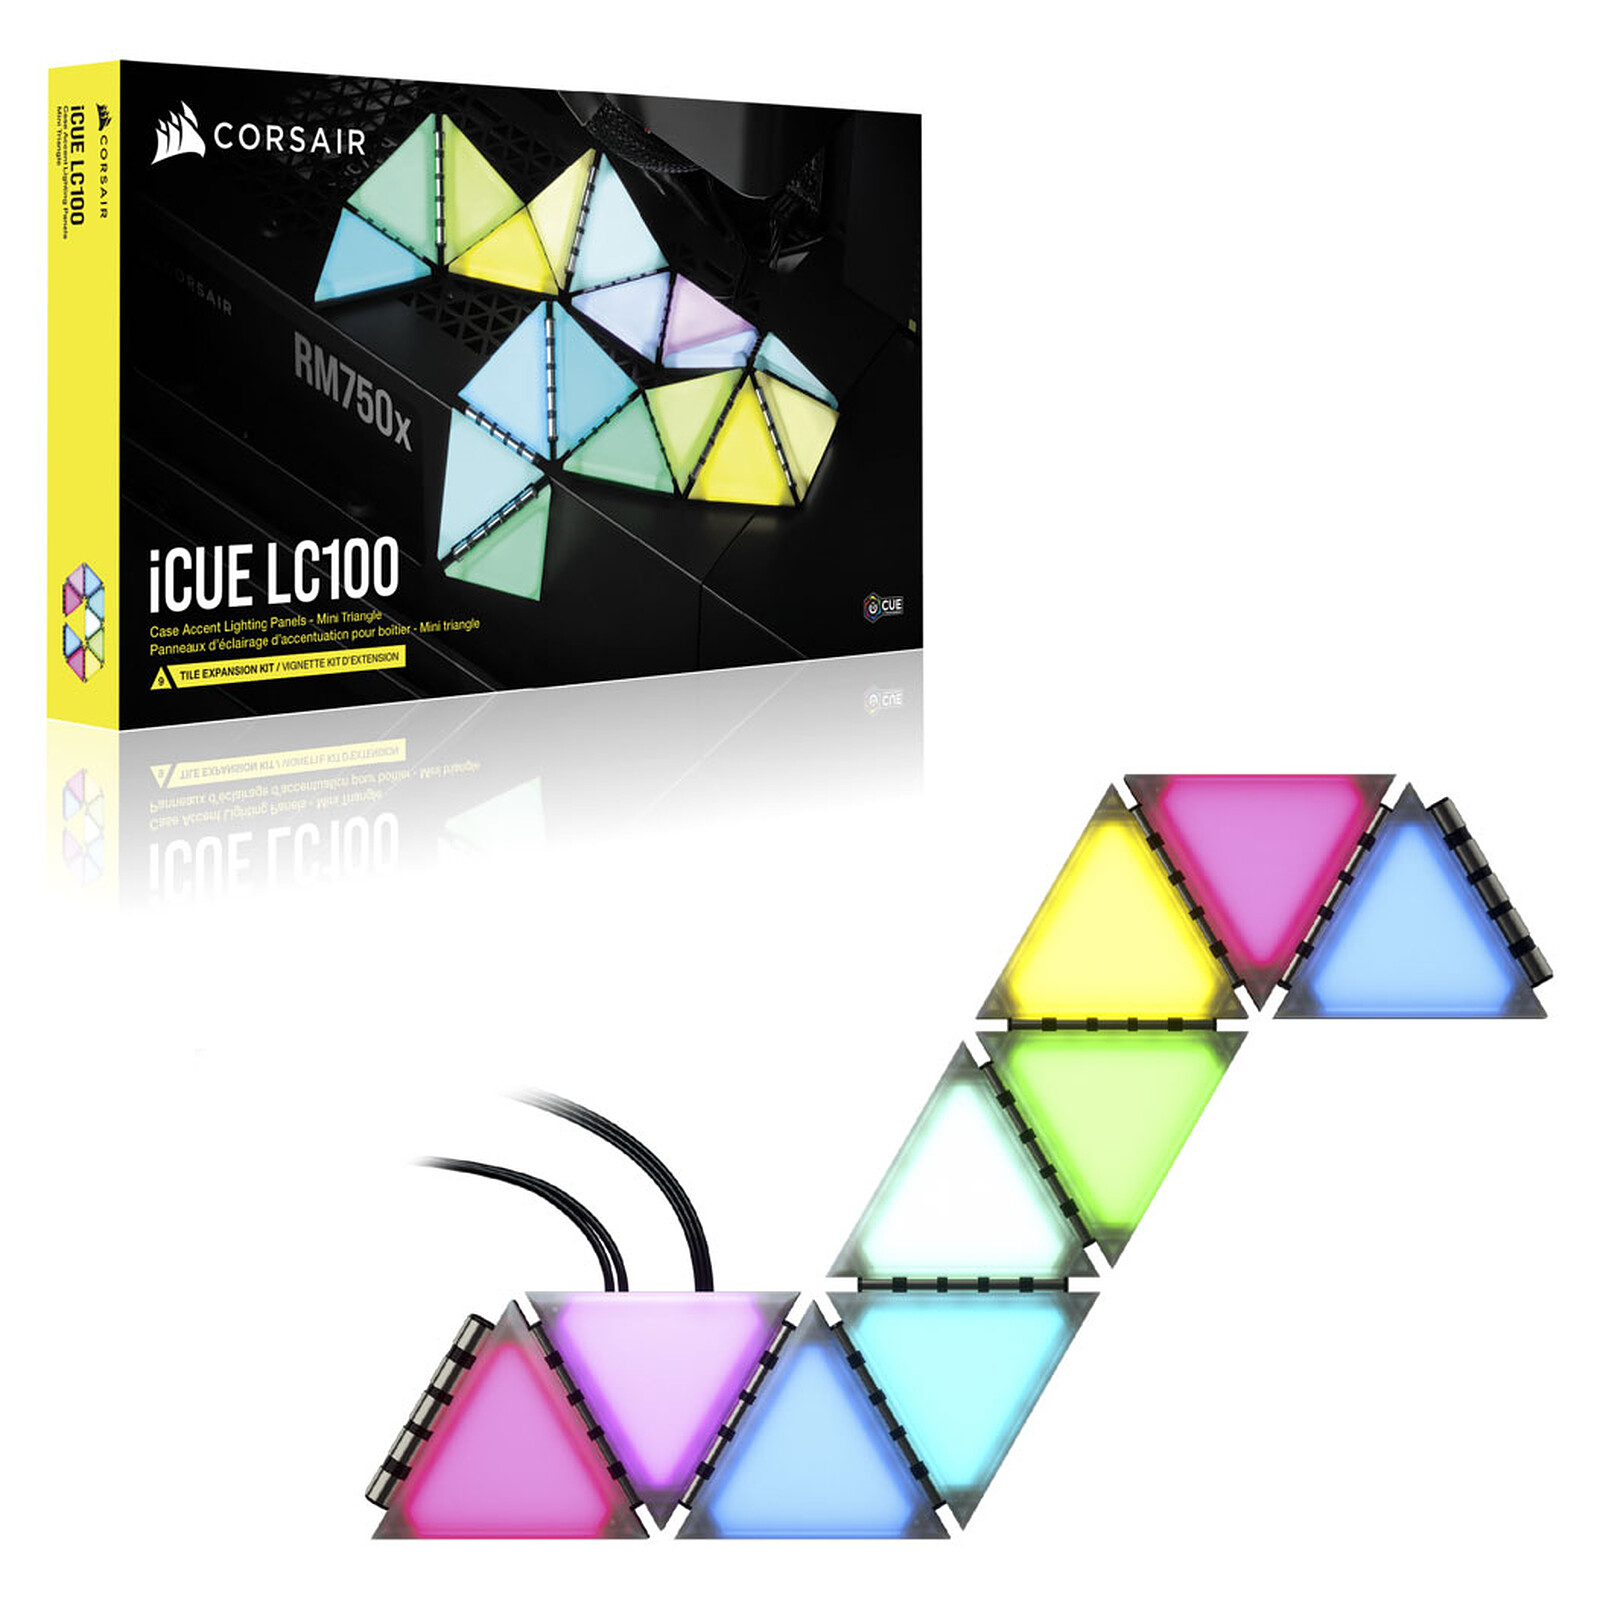 Corsair iCUE LC100 Kit de démarrage - Bande LED - Garantie 3 ans LDLC